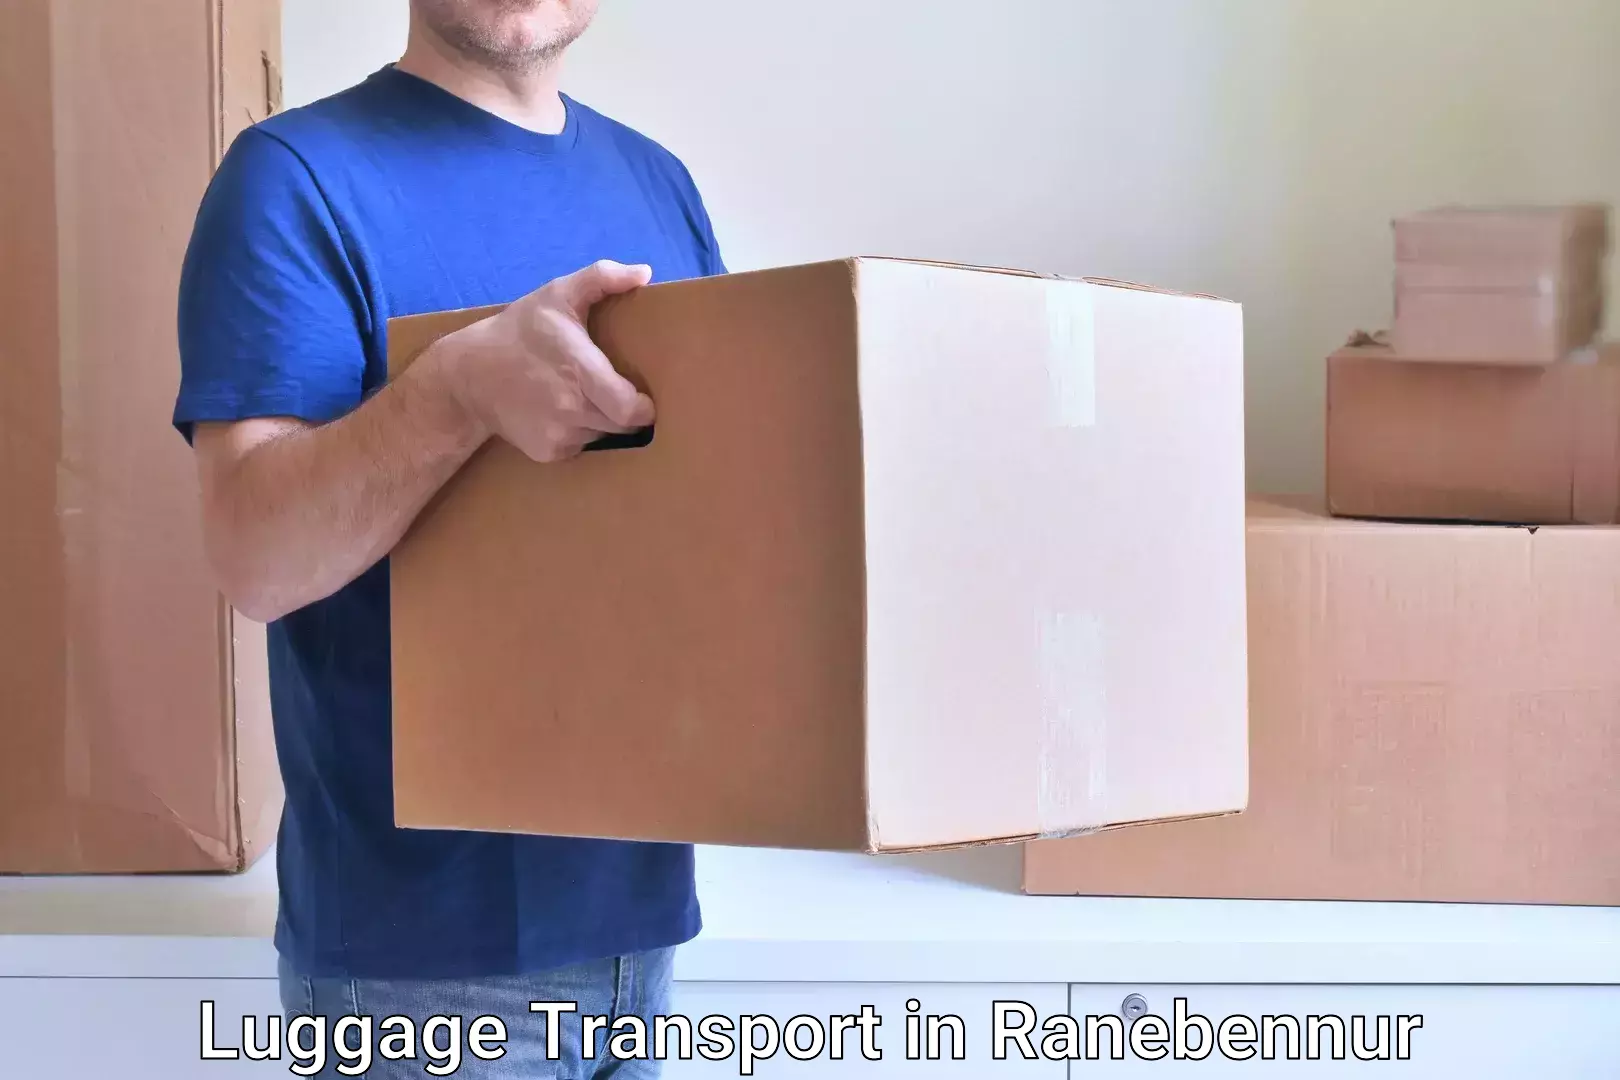 Excess baggage transport in Ranebennur